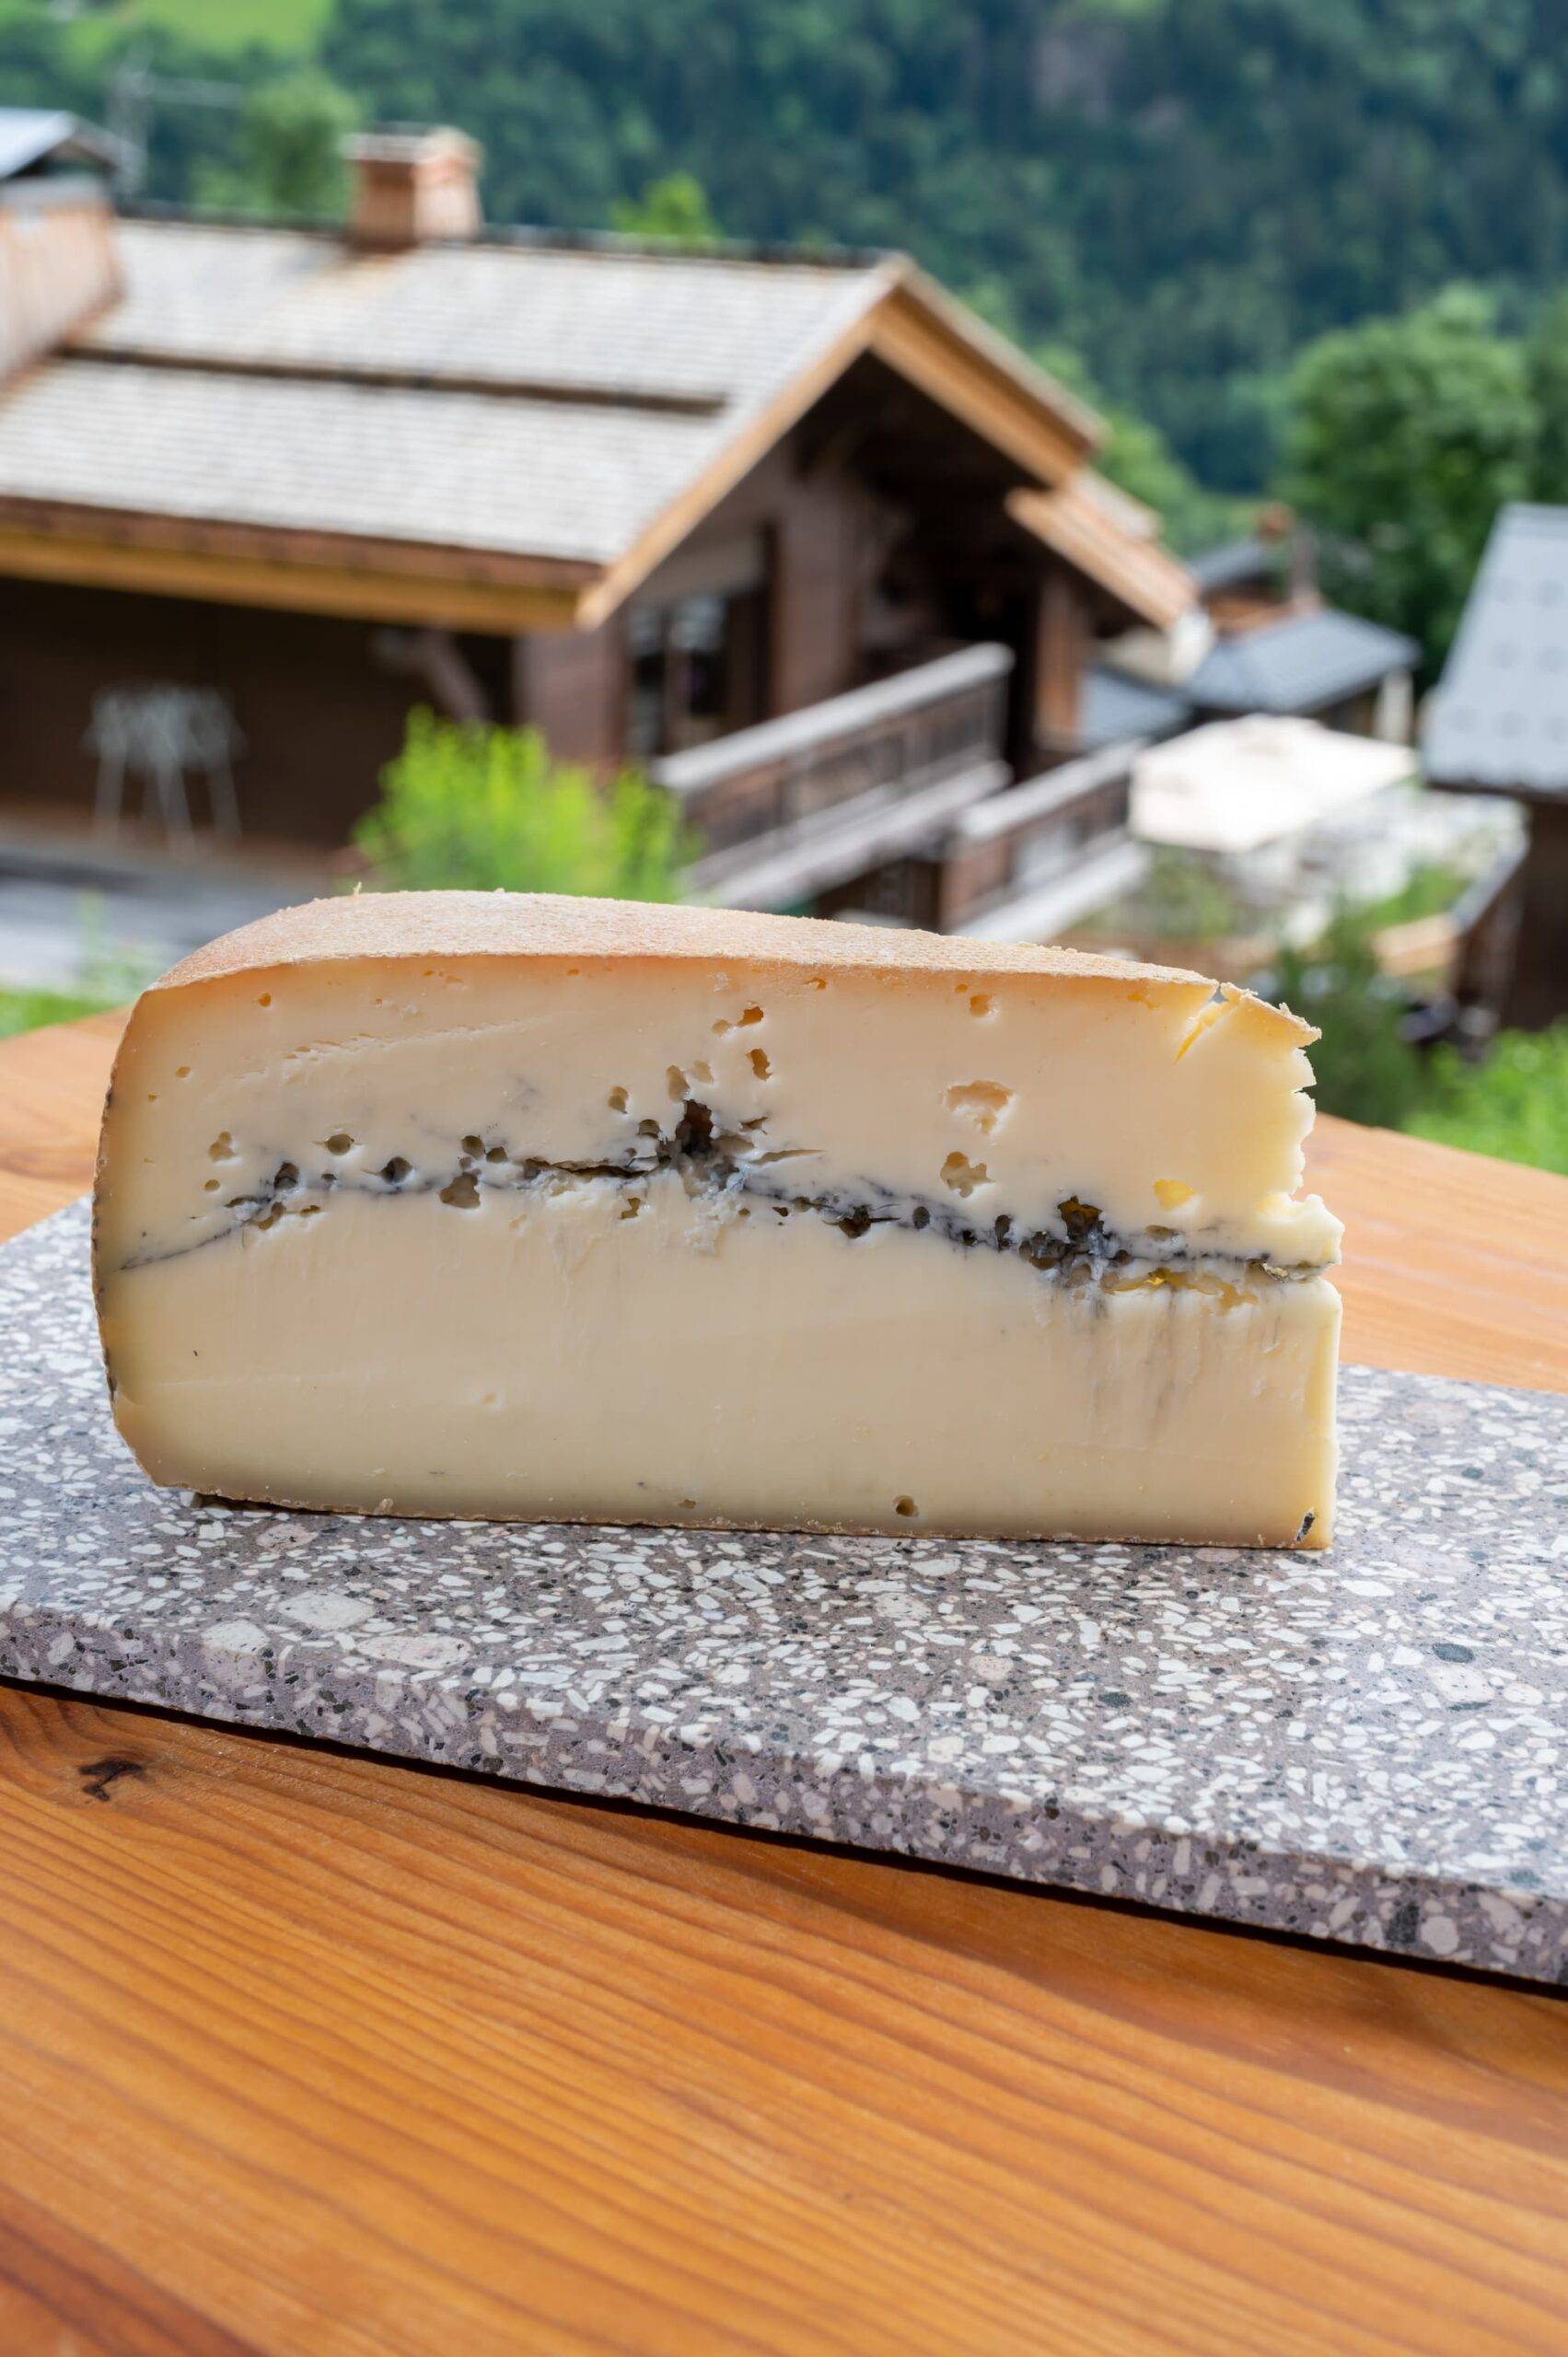 Vente de fromage, crémerie et beurre dans notre épicerie proche de Mulhouse et Belfort Kingersheim 4